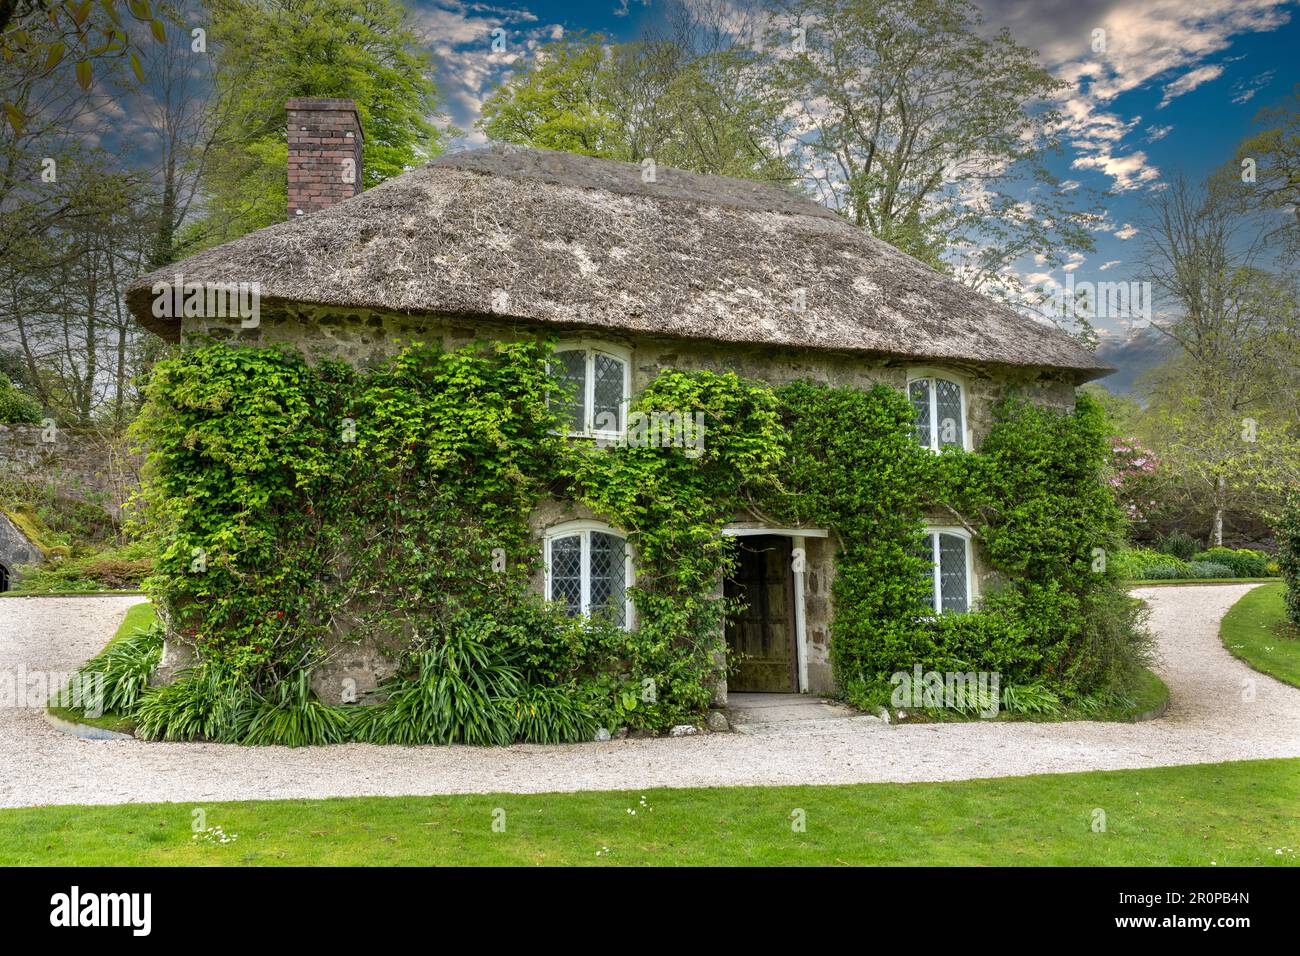 Lanhydrock House - Maison de campagne de jacobean - Bodmin, Cornouailles, Angleterre, Royaume-Uni - vue sur la maison de jardiniers dans les jardins de Lanhydrock Banque D'Images